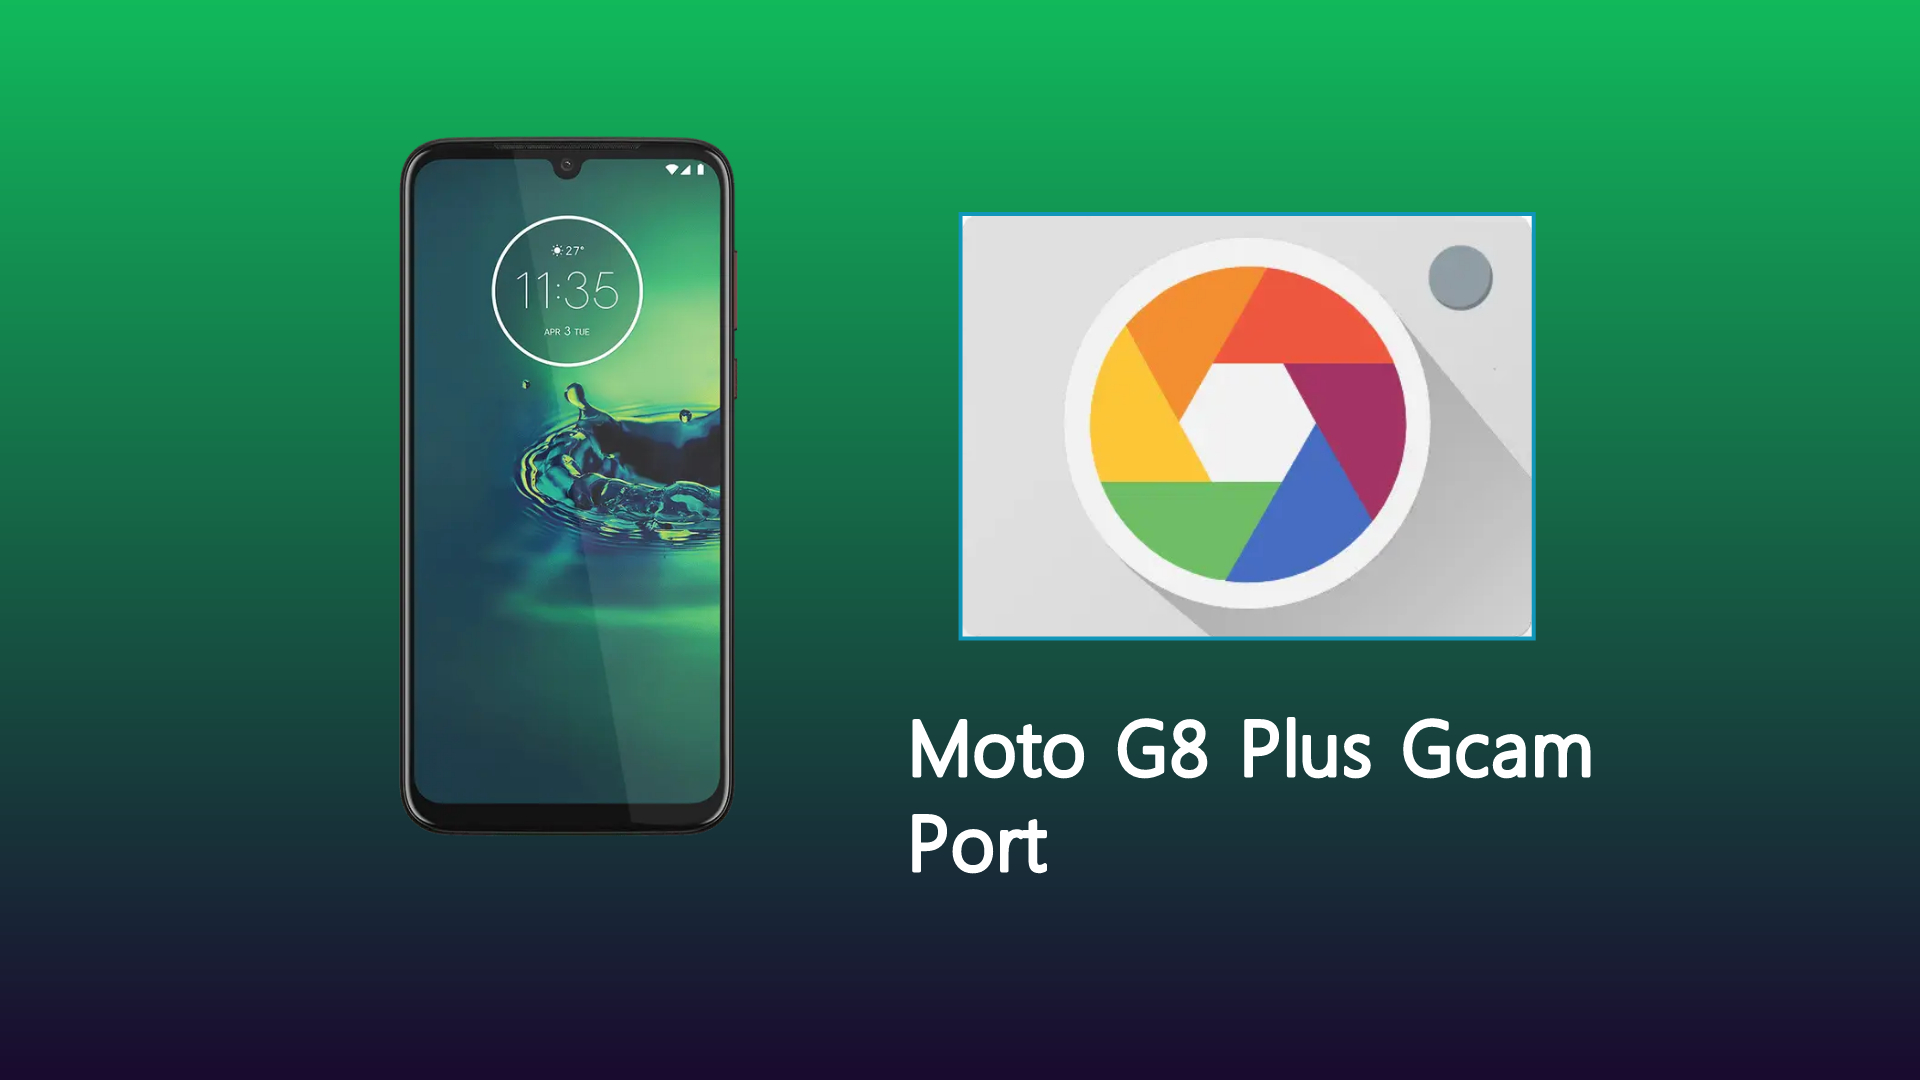 Moto G8 Plus Gcam Port